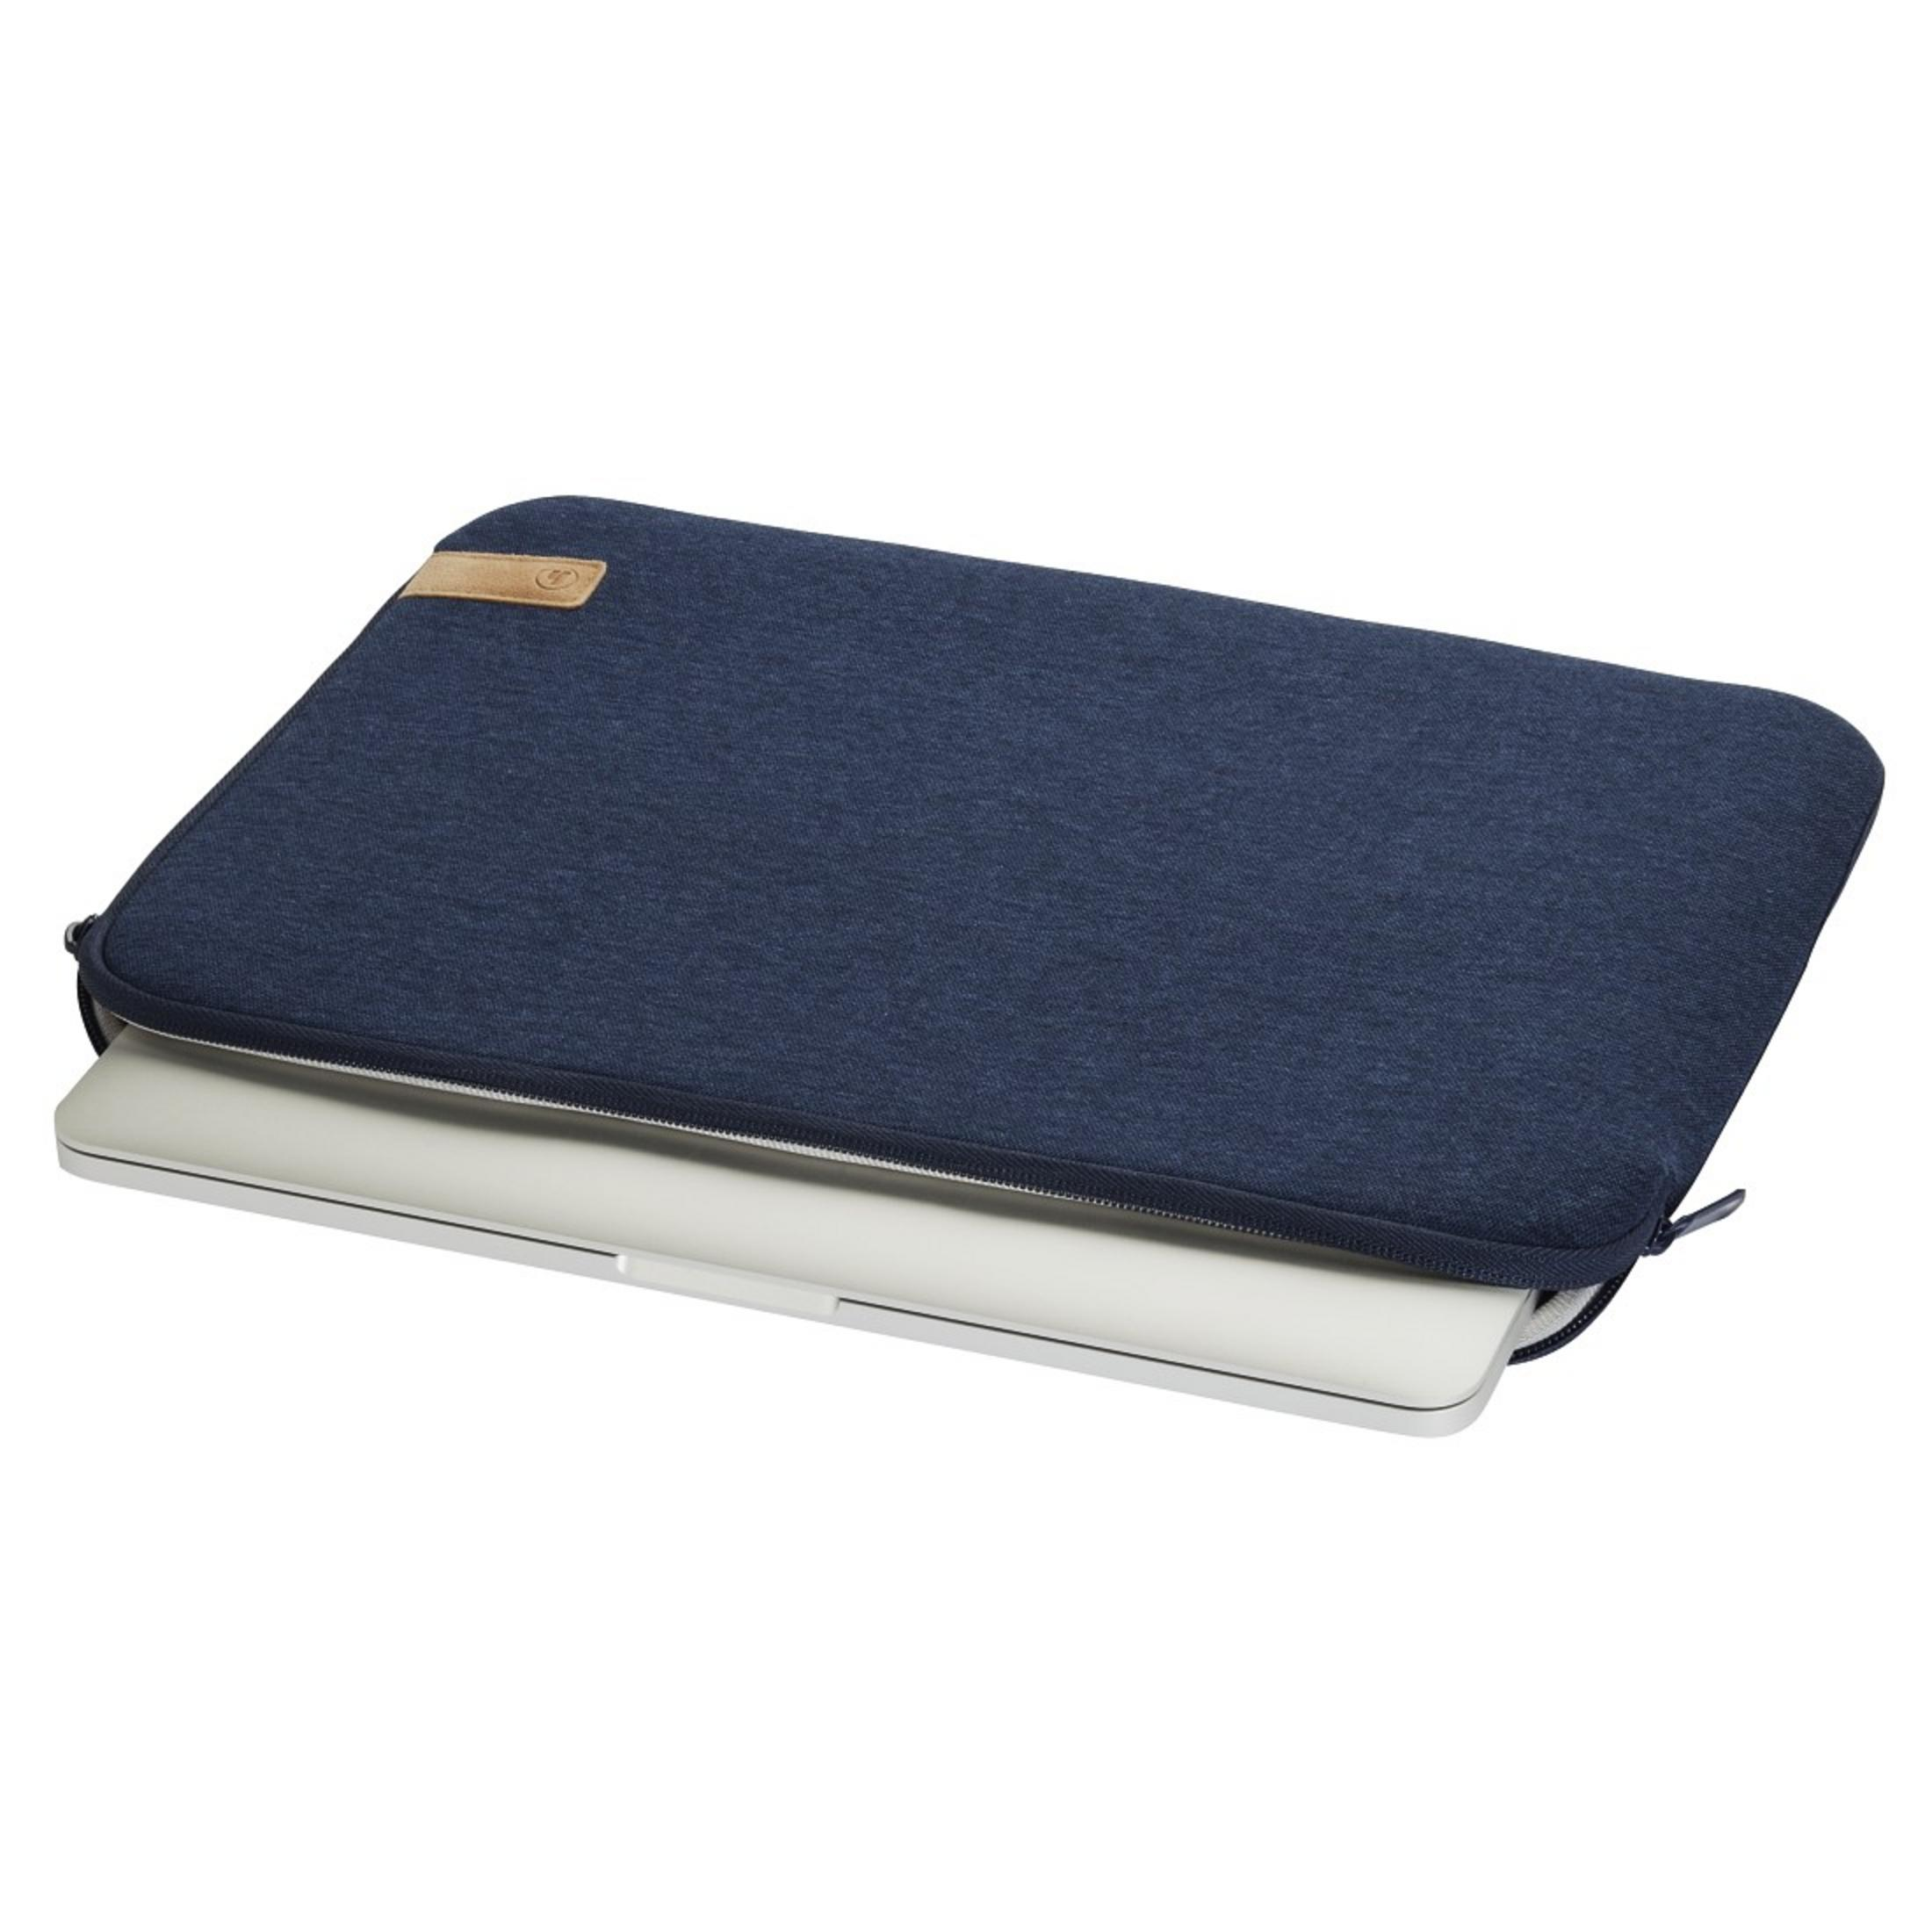 HAMA 101811 NB-SLE Notebooktasche 15.6 JERSEY für Blau Jersey, Universal Sleeve BLAU